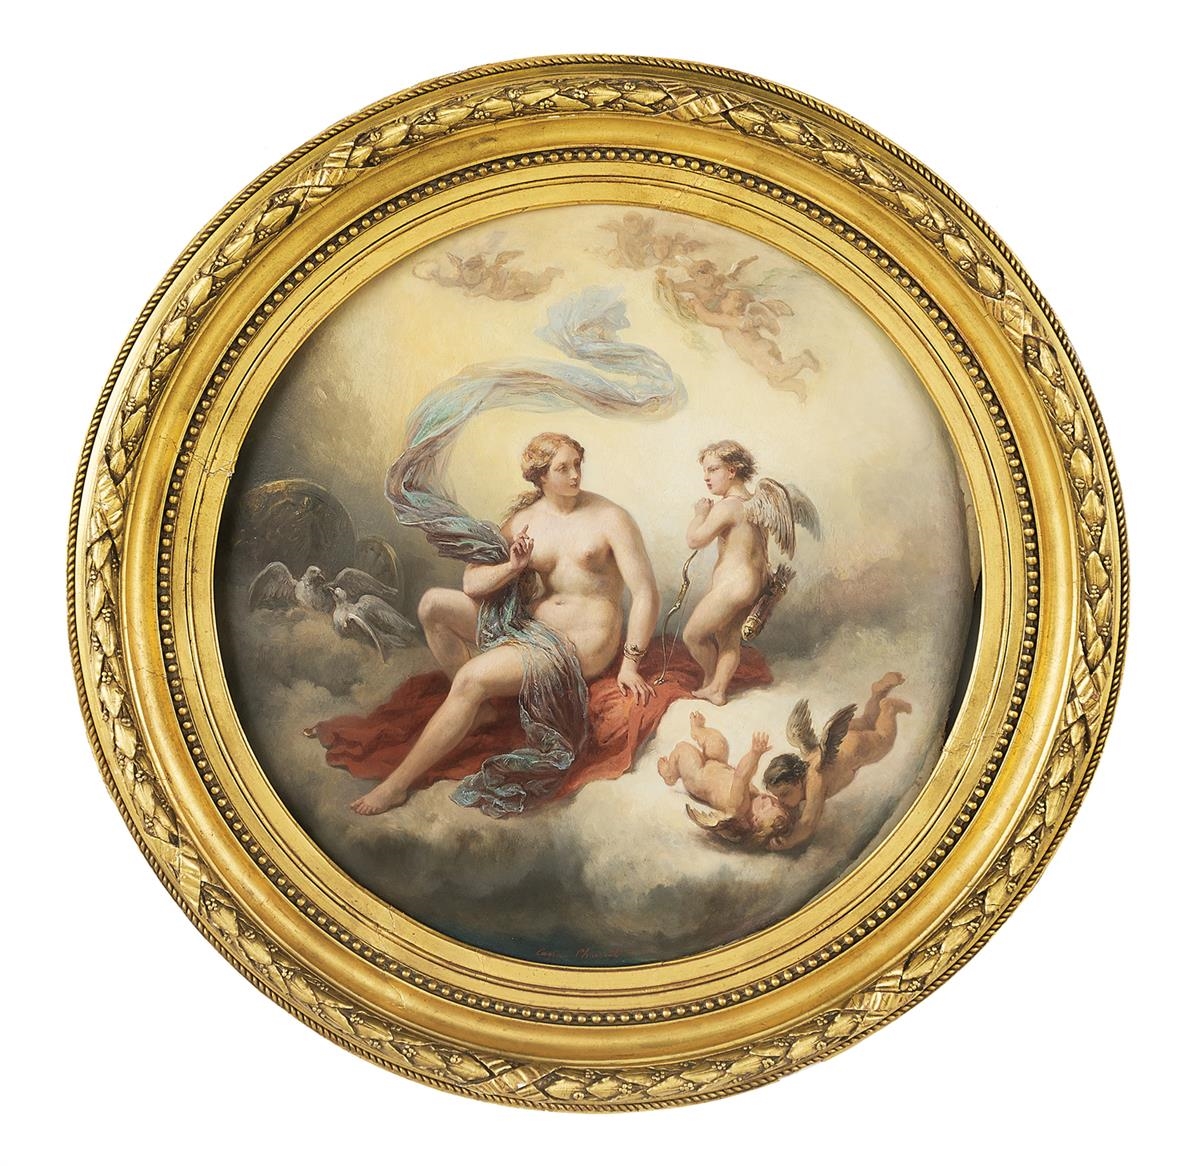 Lot - Eugène-Louis CHARPENTIER Paris, 1811 - 1890 Wellington en Espagne,  1813 Huile sur toile (Toile d'origine) - Catalog# 740168 Old Master & 19th  Century Art